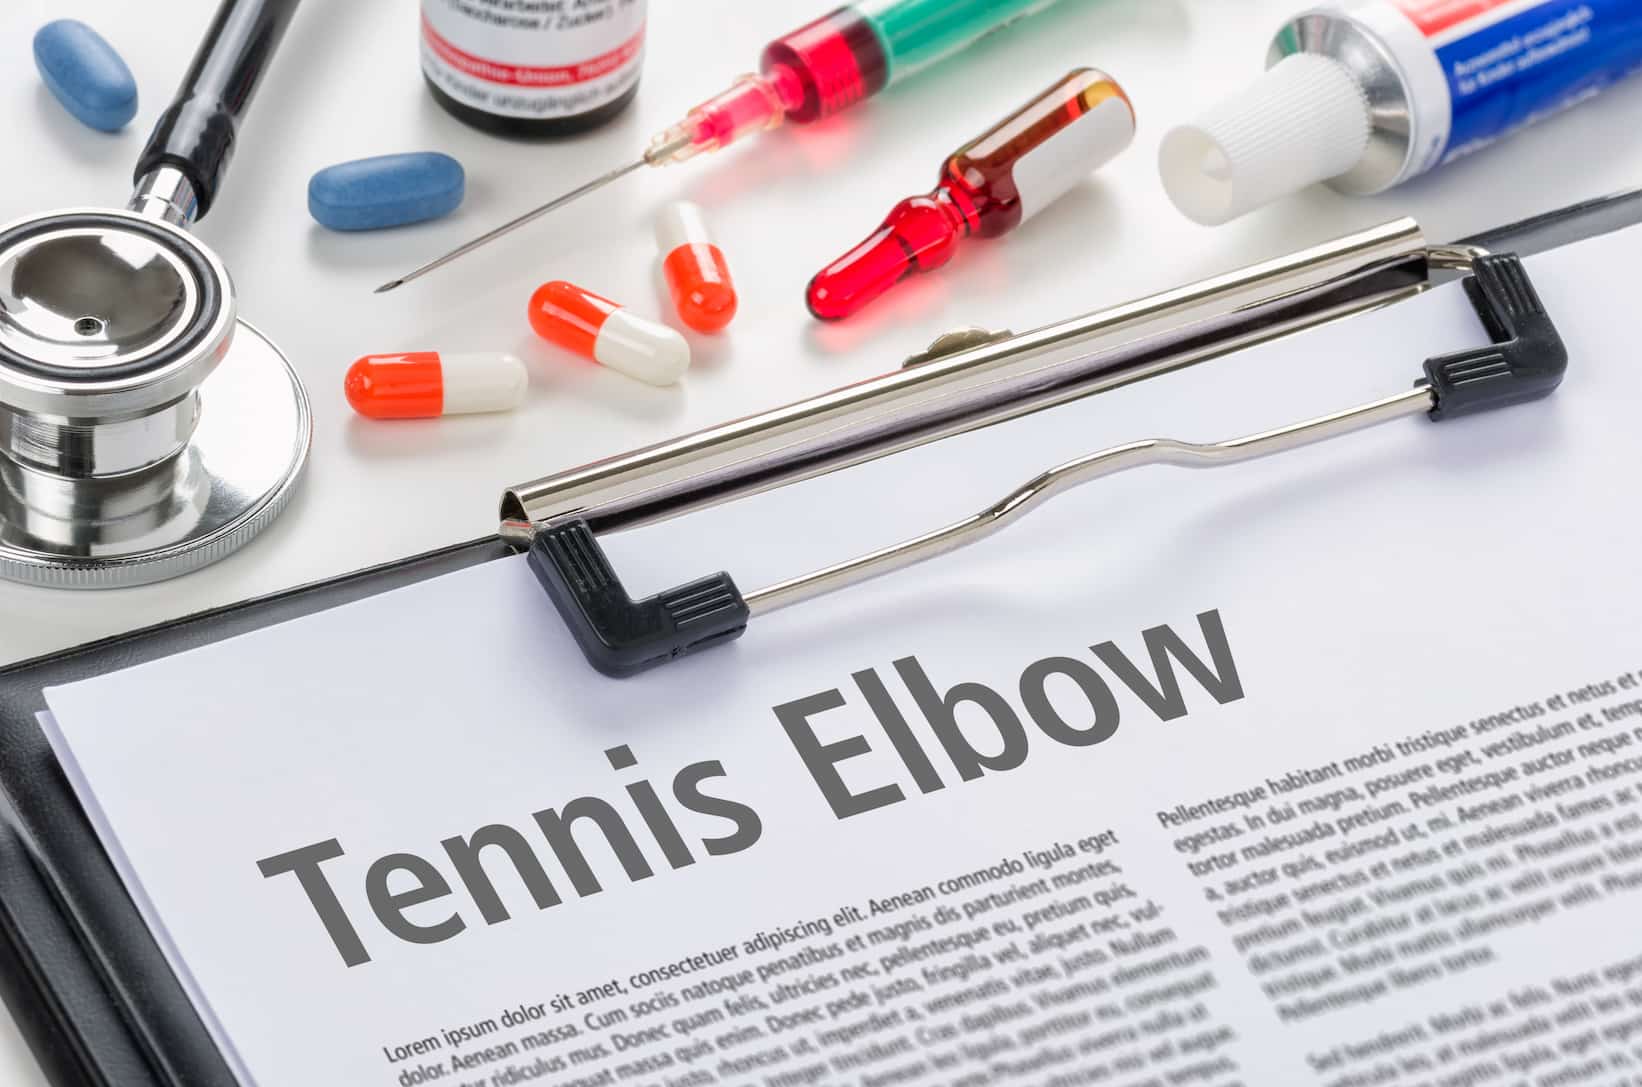 Opération chirurgicale du tennis elbow en turquie